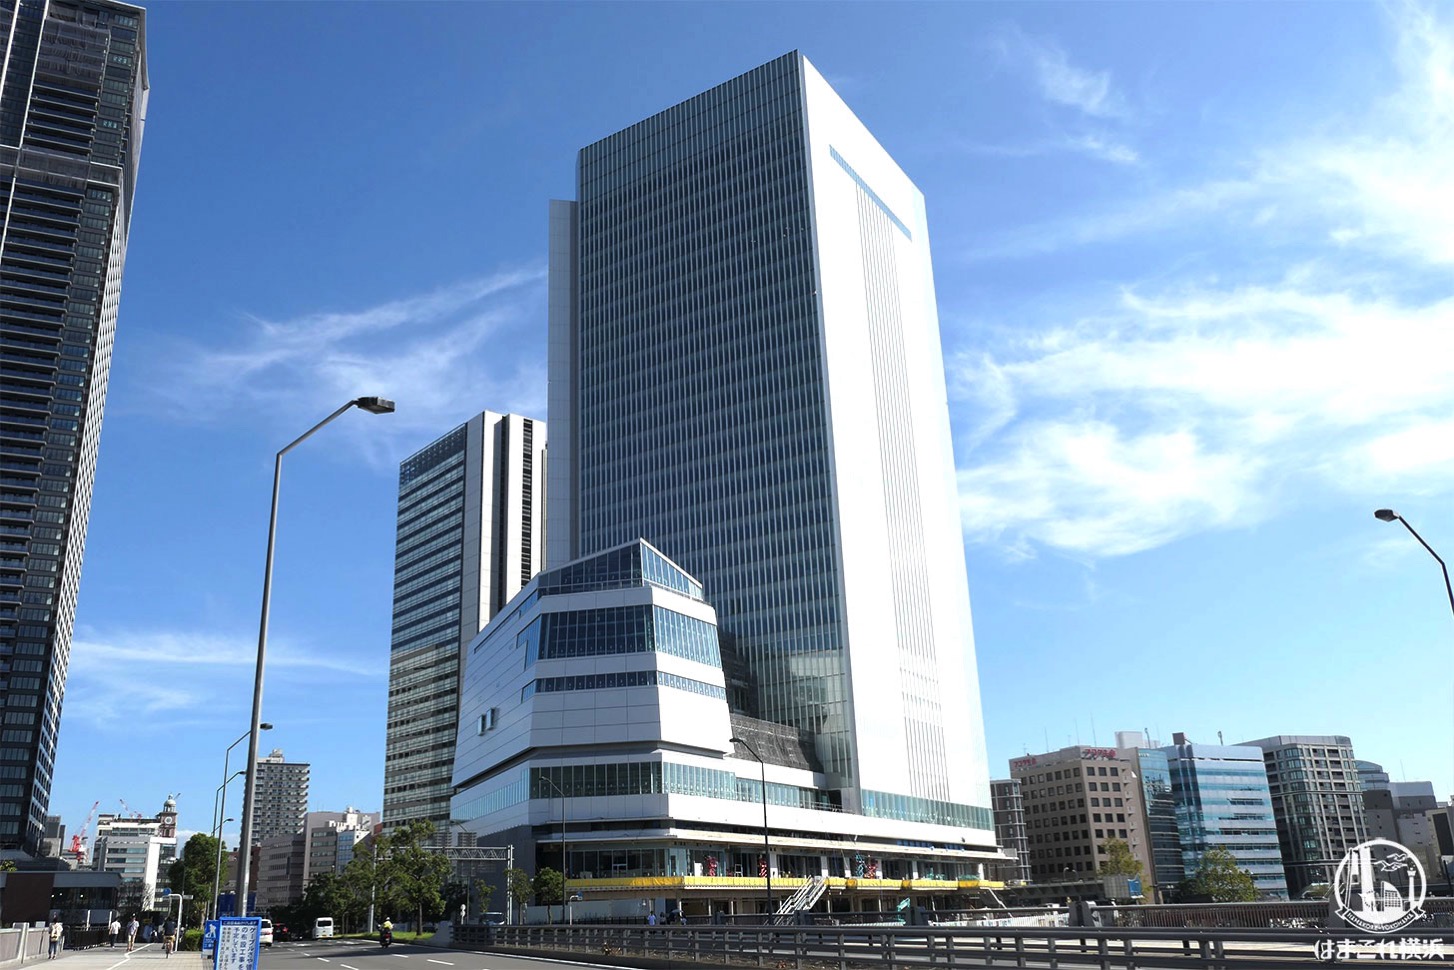 2020年 市民が選ぶ「横浜10大ニュース」が決定！1位は新しい生活様式